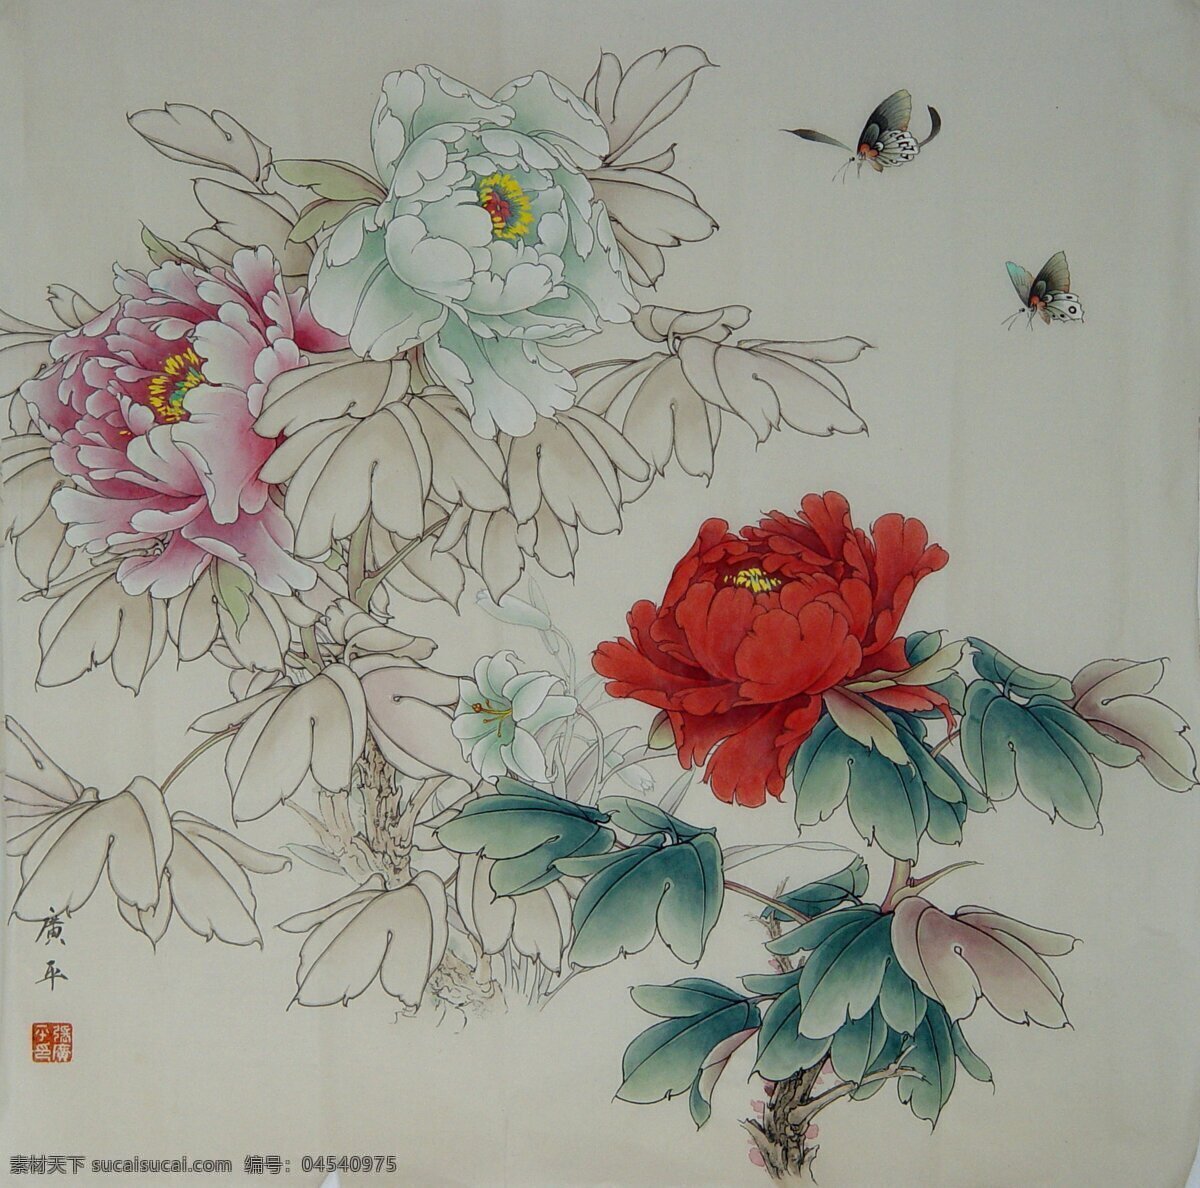 工笔花鸟 中国画 中国风 牡丹 古典 绘画书法 文化艺术